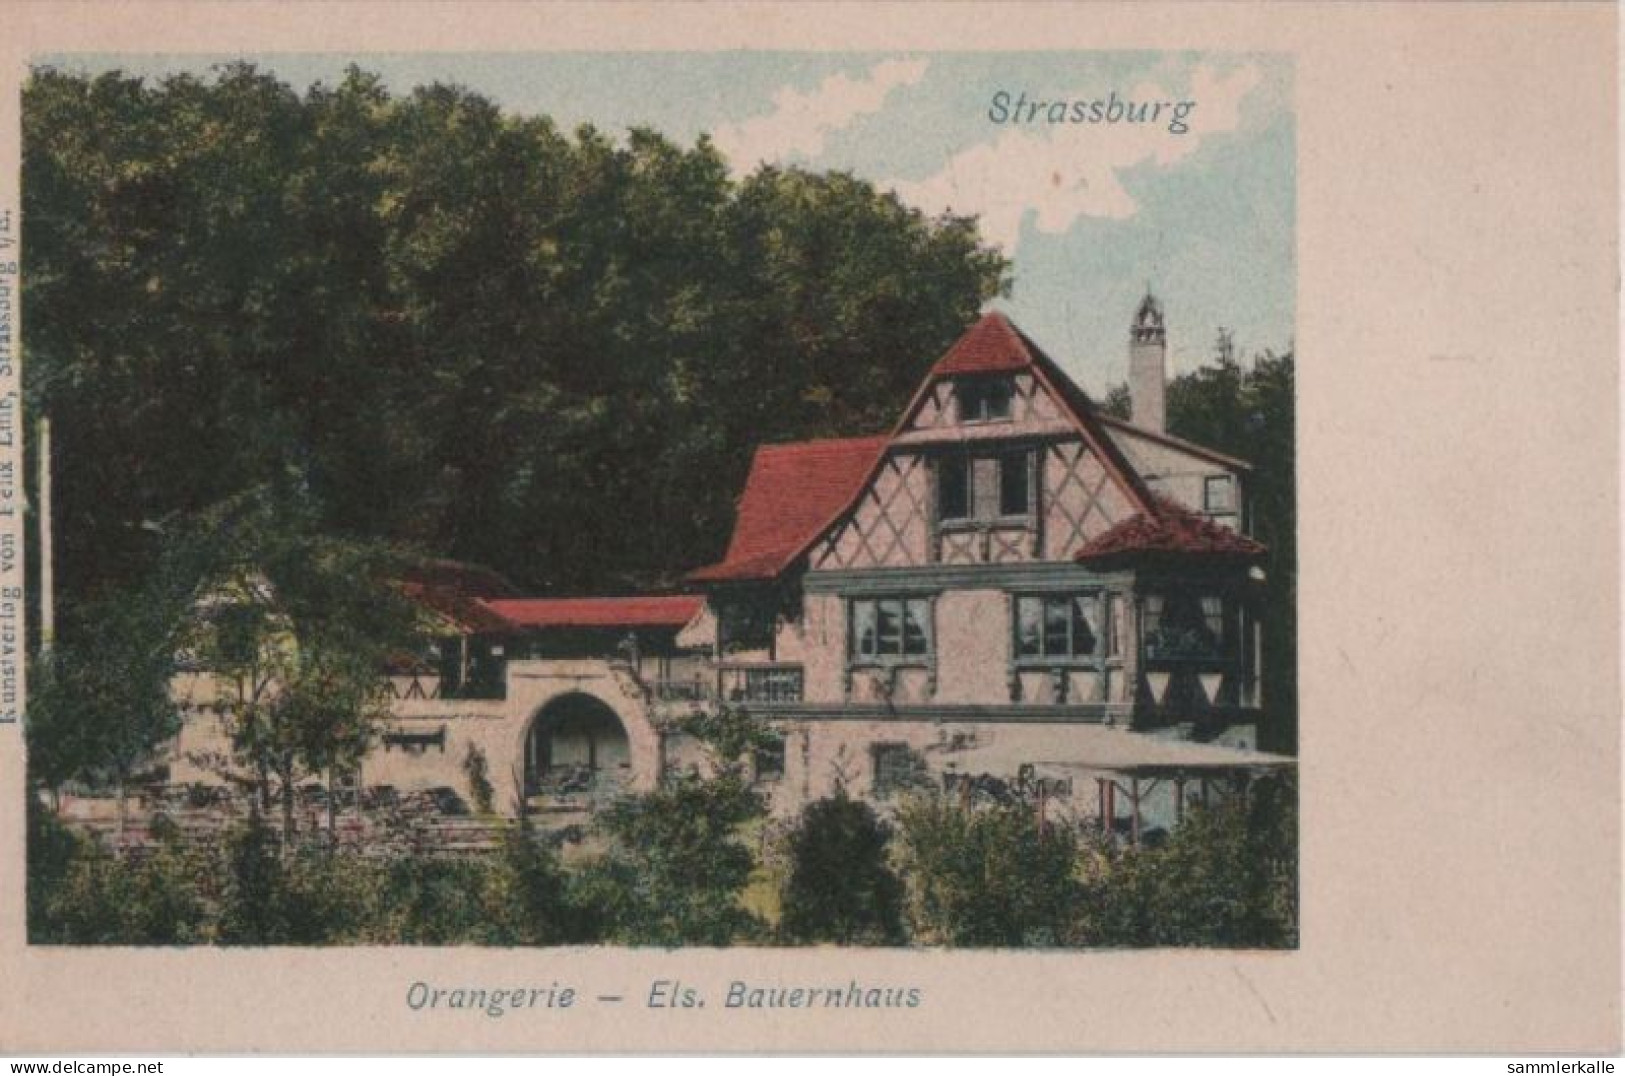 93557 - Strassburg - Orangerie, Els. Bauernhaus - Ca. 1935 - Elsass